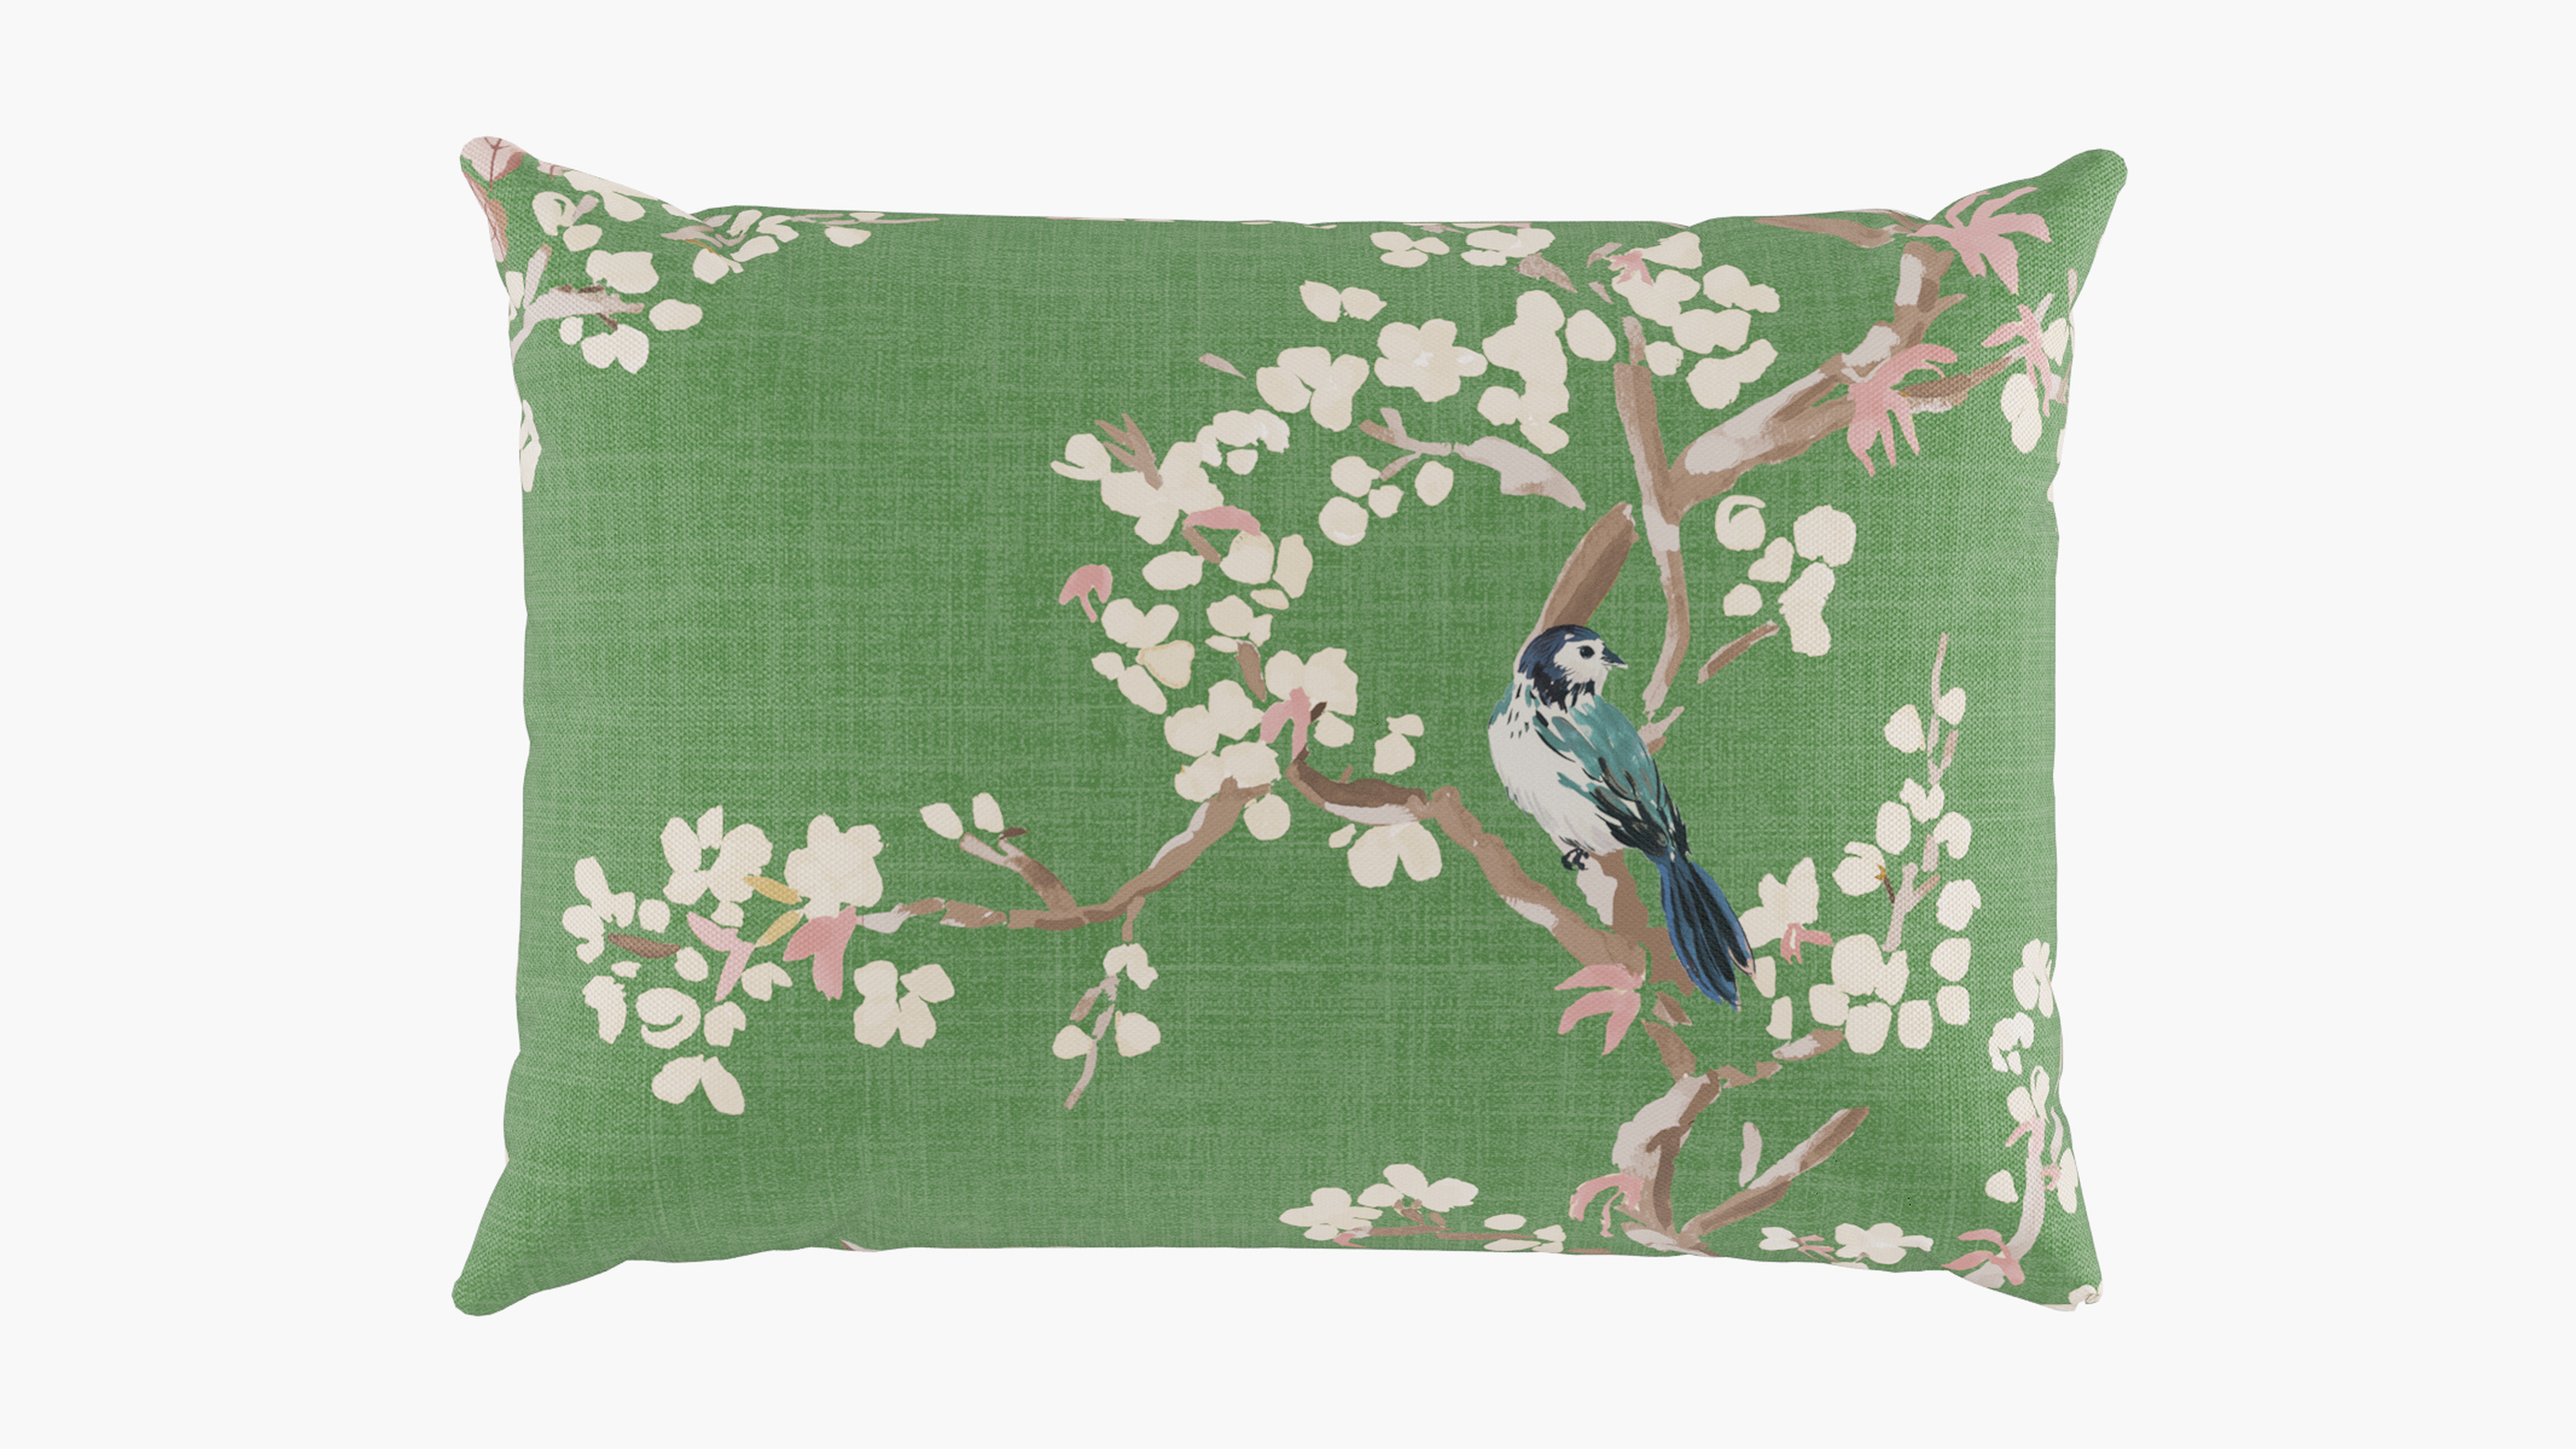 Outdoor 14" x 20" Lumbar Pillow, Jade Cherry Blossom, 14" x 20" - The Inside